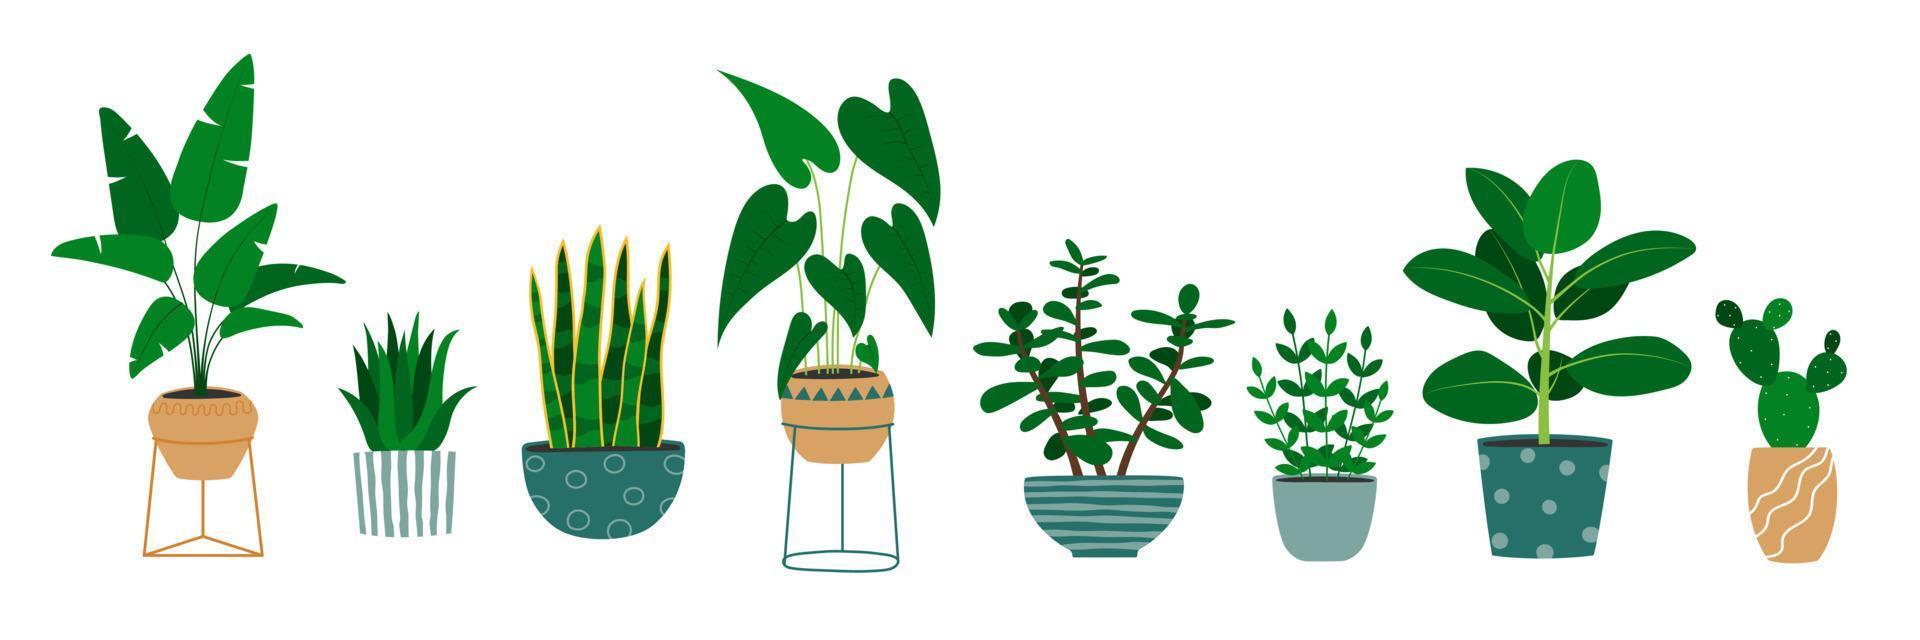 conjunto de plantas de interior dibujadas a mano en macetas. planta de alocasia, cactus, monstera, planta de jade. vector